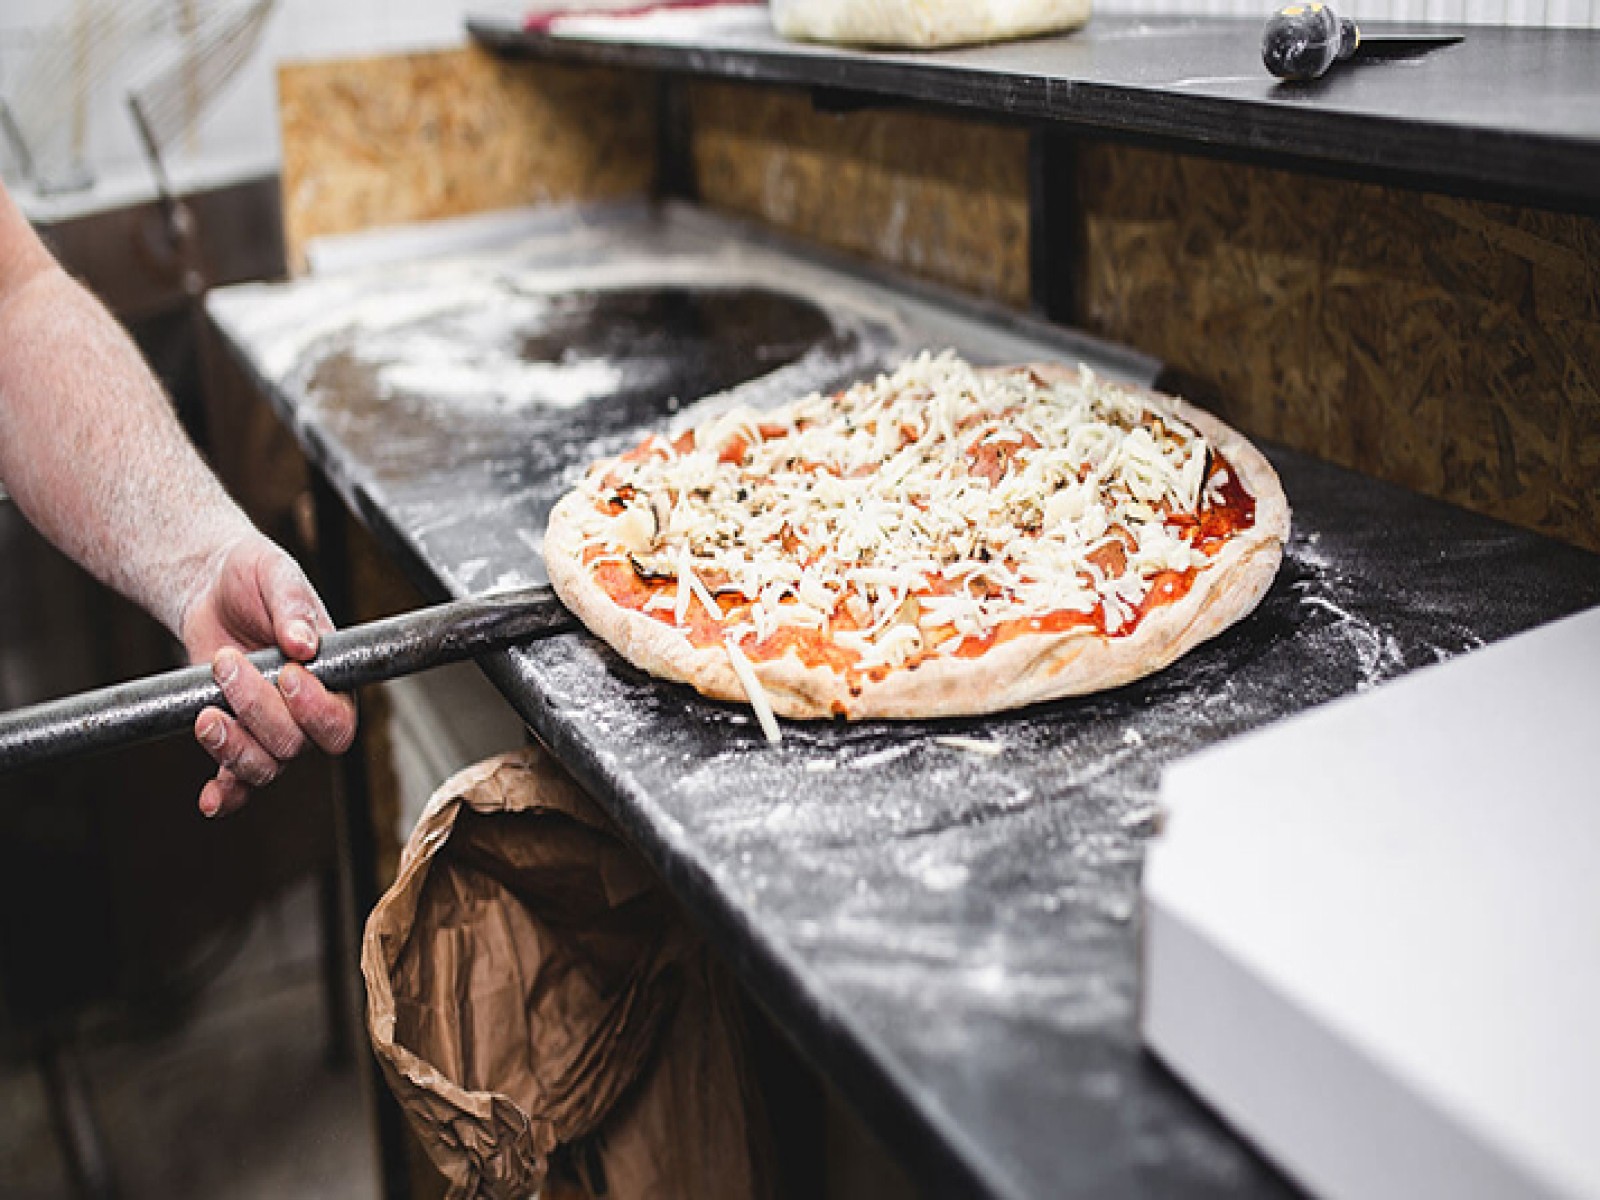 Pizzeria e cucina, ideale per pizza al taglio e asporto - Rif. Bor504/24